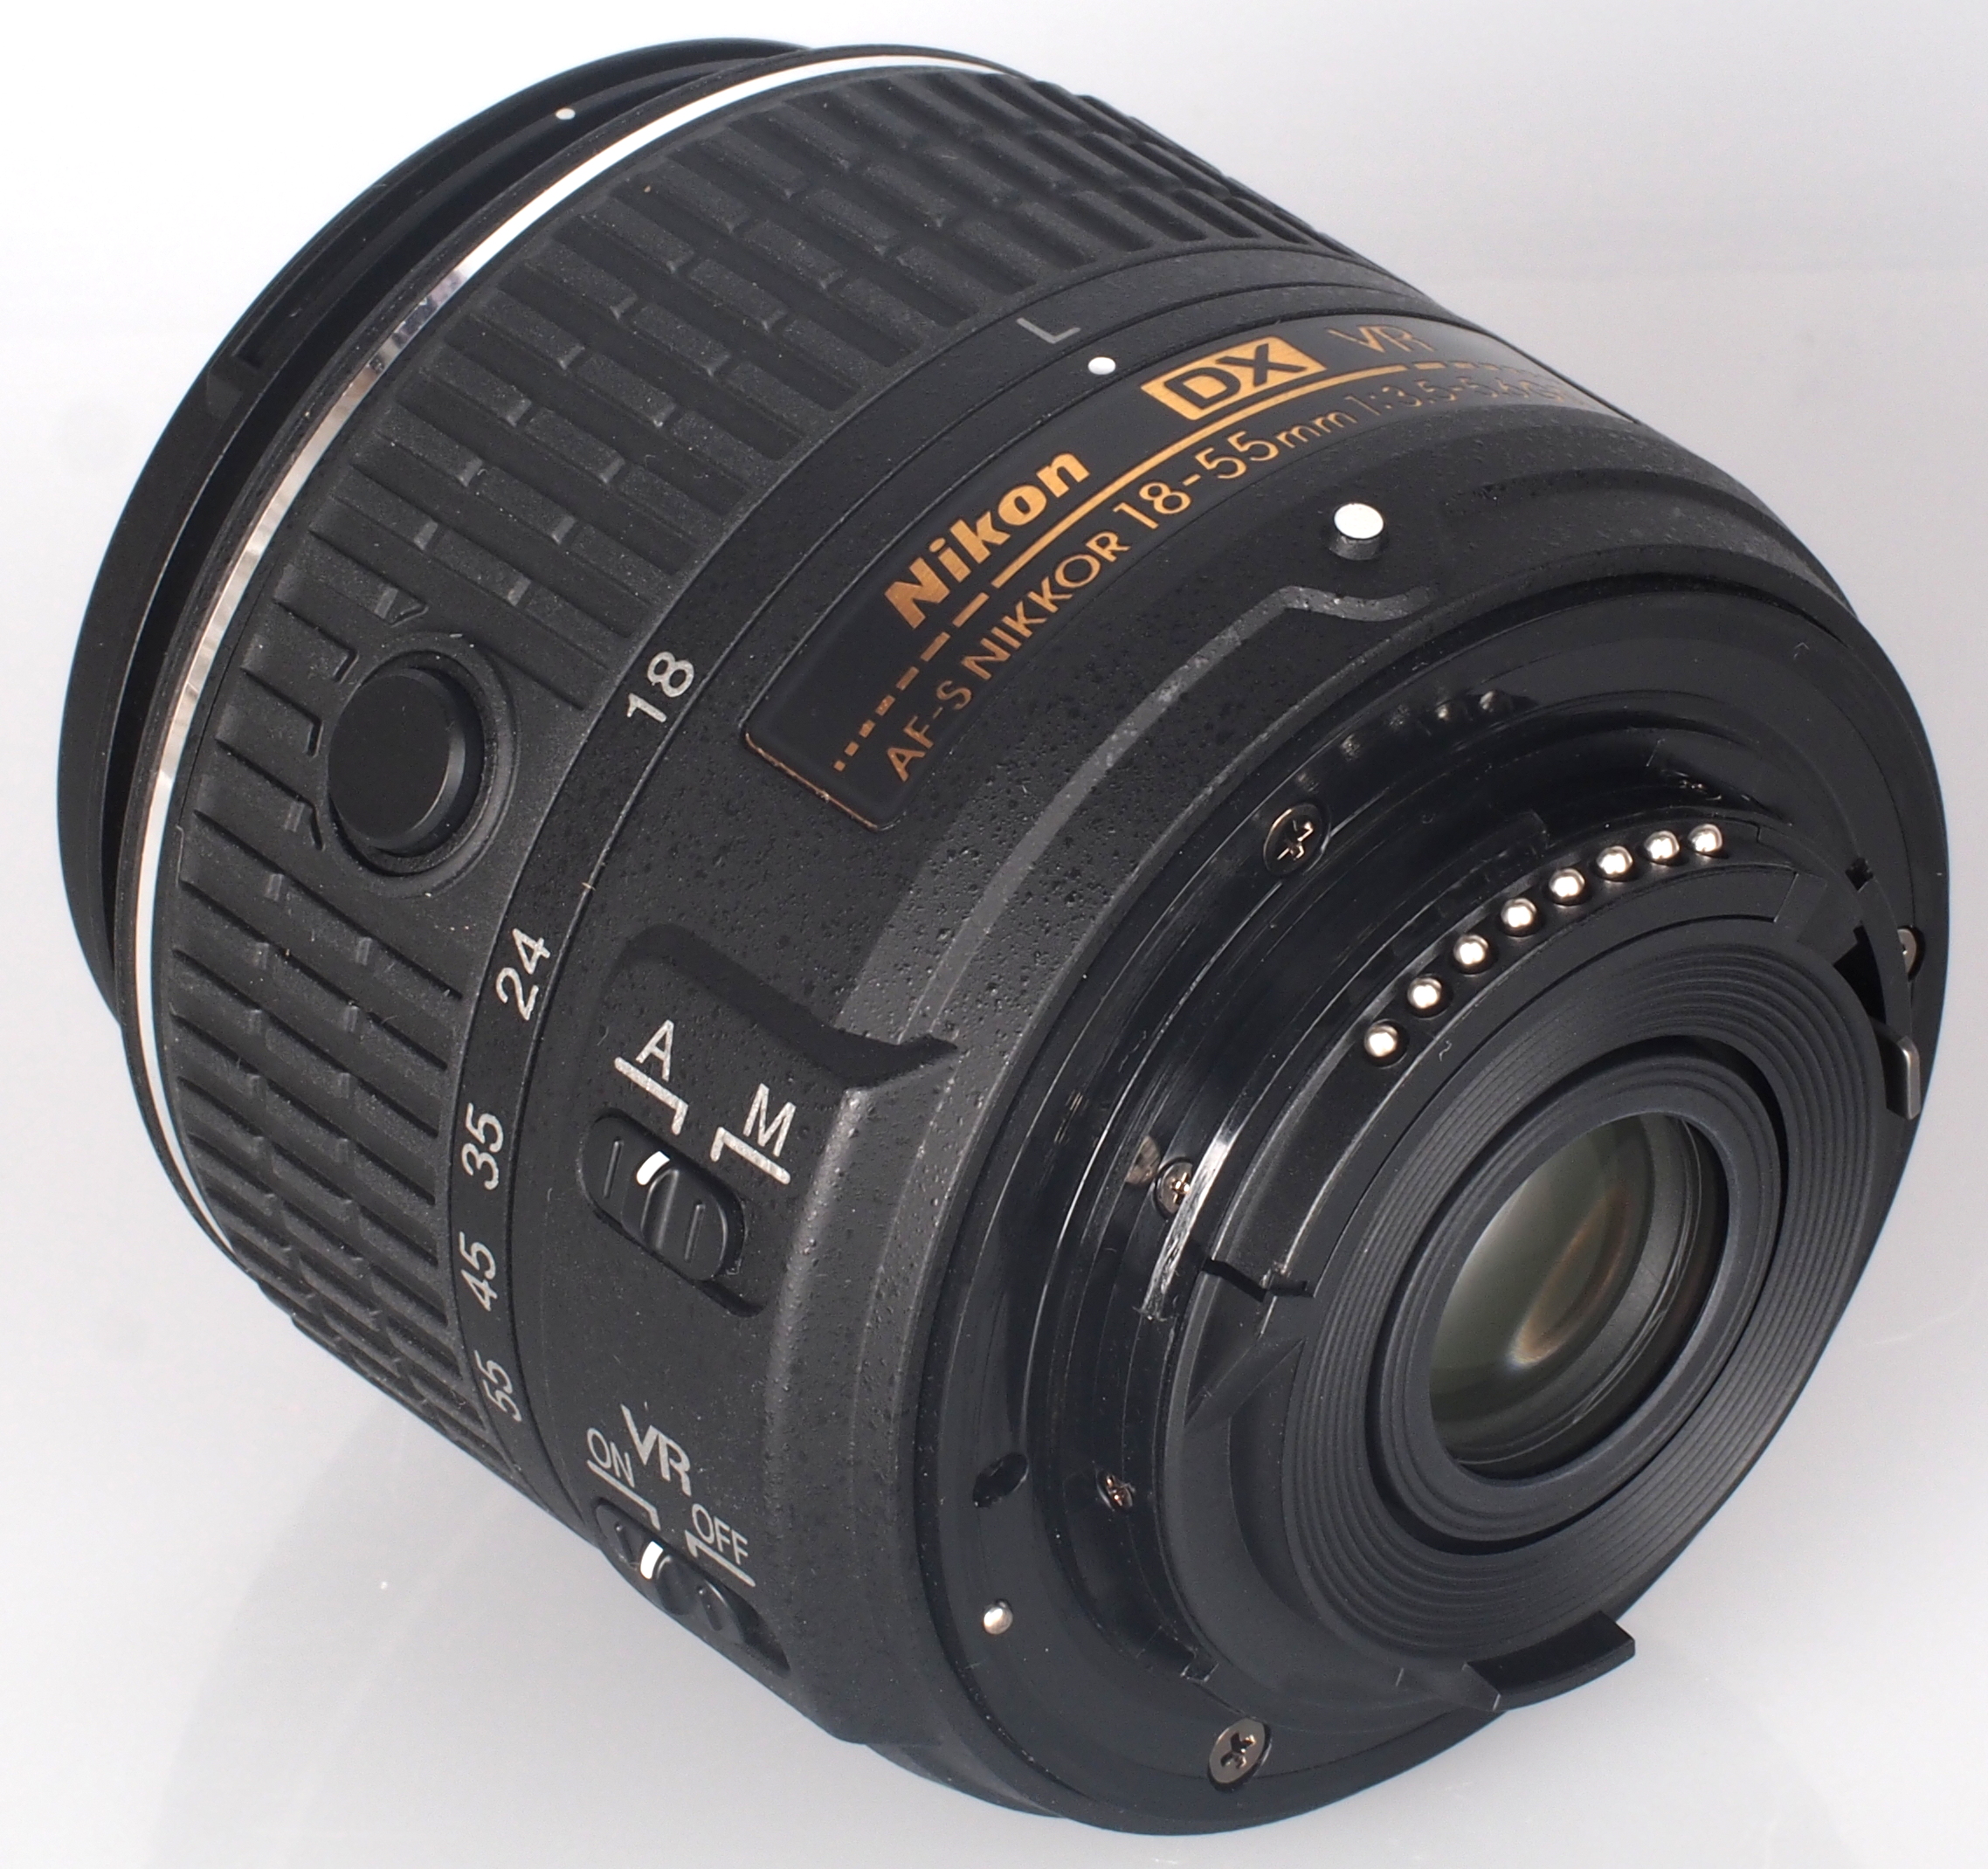 Nikon AF-S DX Nikkor 18?55mm f/3.5?5.6G VR II Lens Review